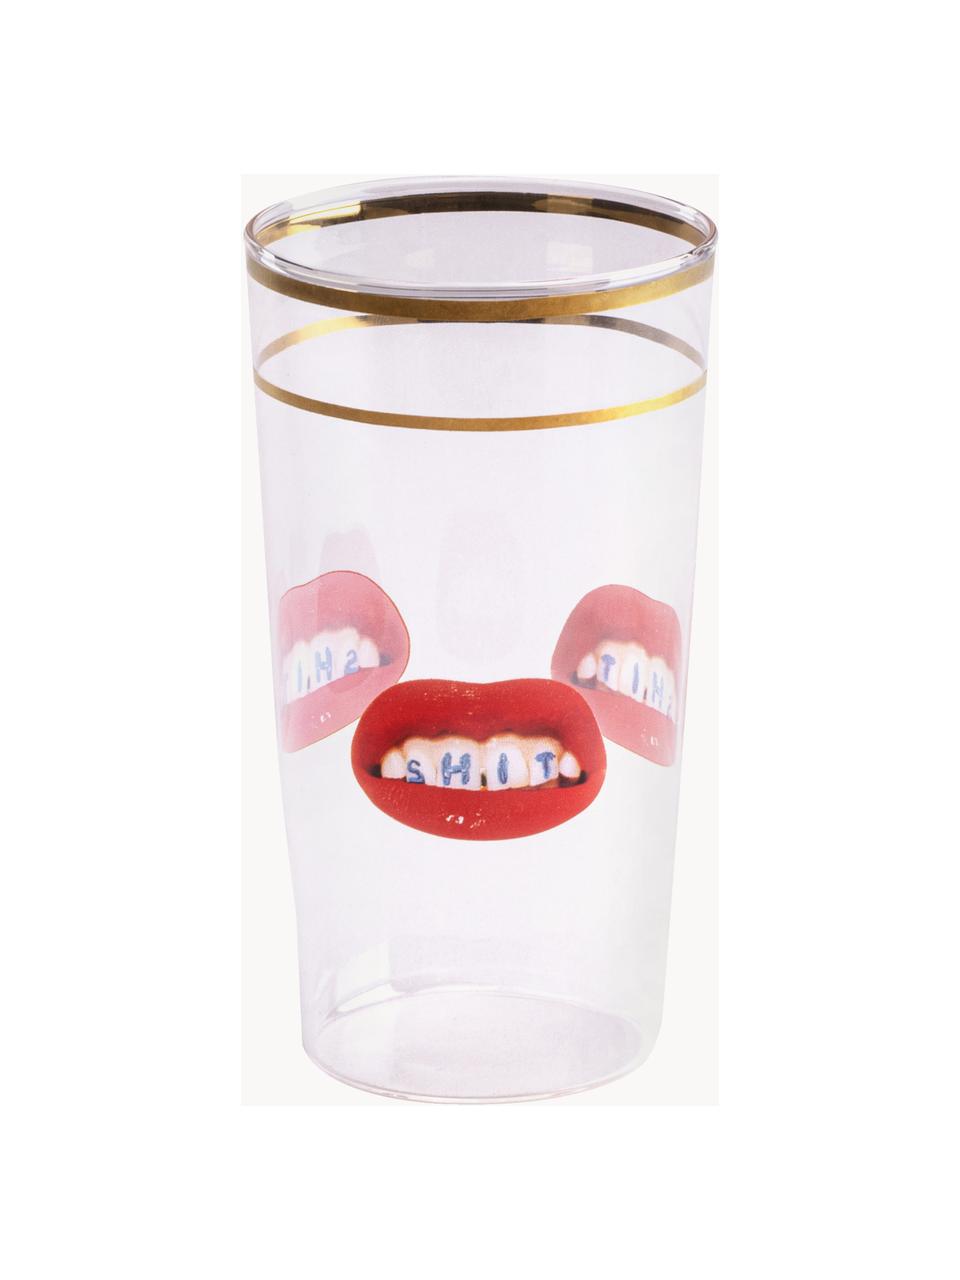 Designer Wasserglas Lips, Dekor: Gold, Rote Lippen mit Aufschrift, Ø 7 x H 13 cm, 375 ml